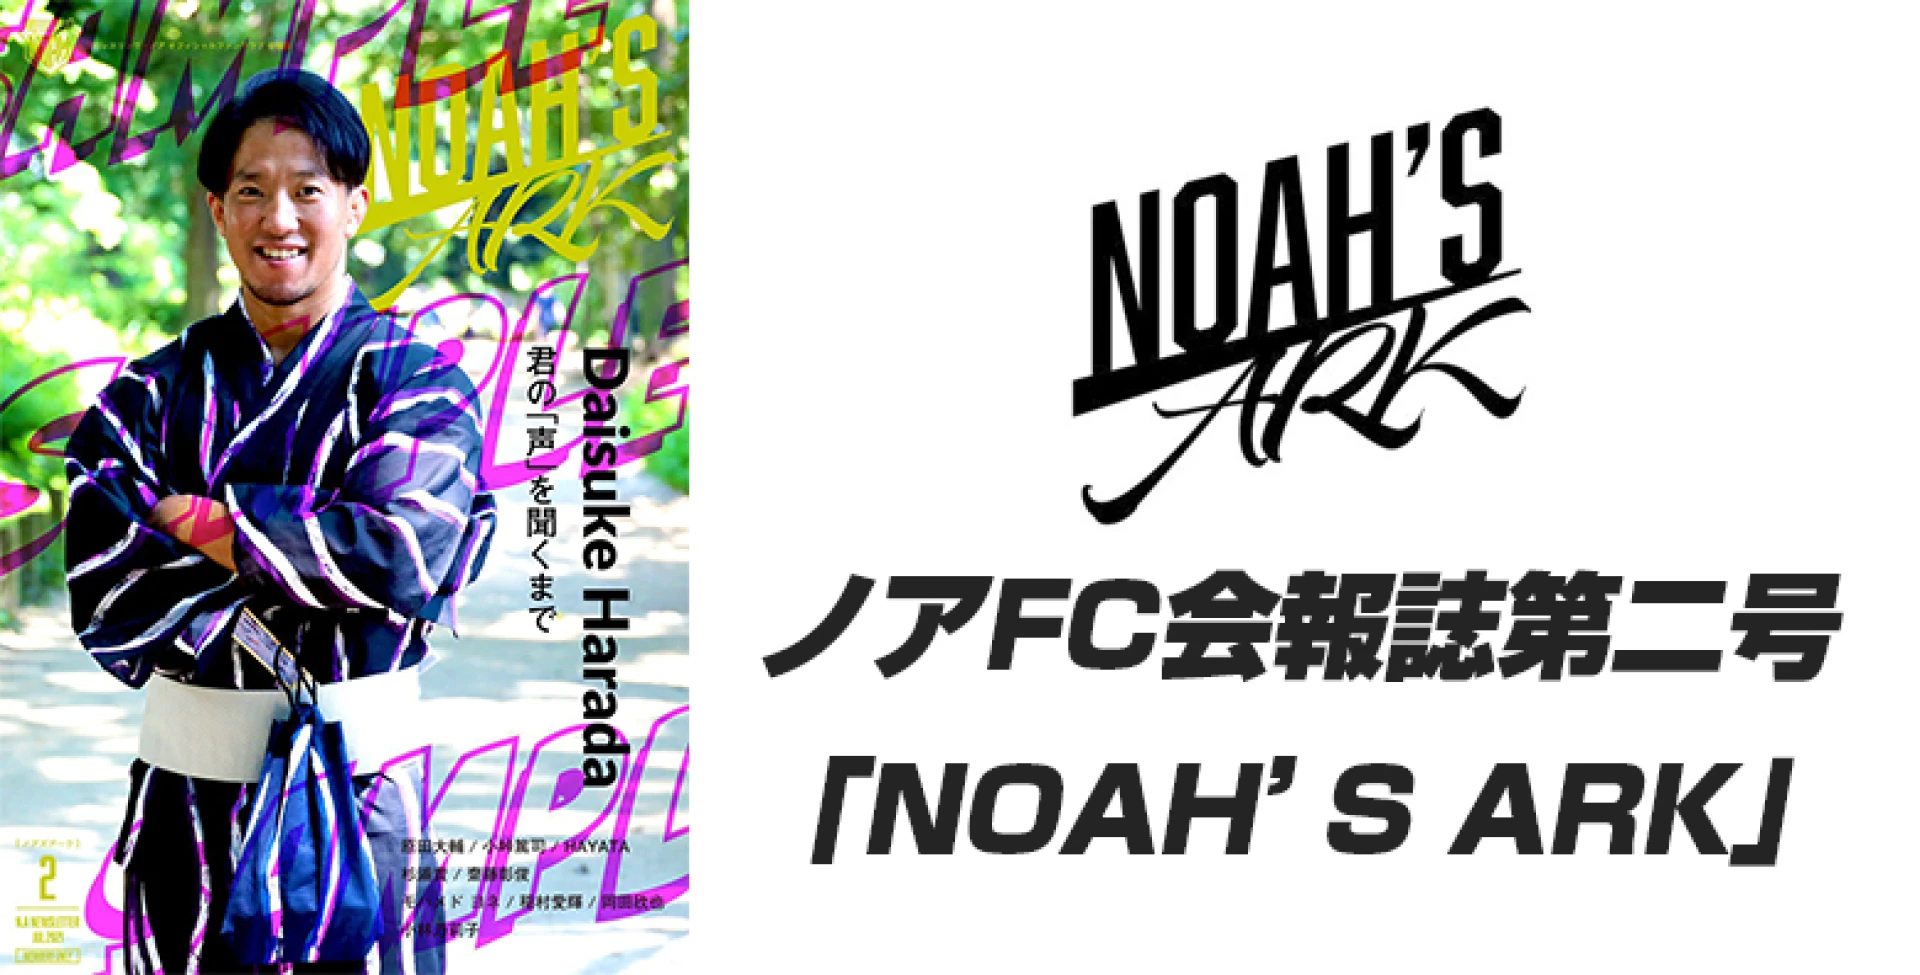 ノアFC会報誌第二号「NOAH’S　ARK」7/26 12:00～ダウンロード開始!!